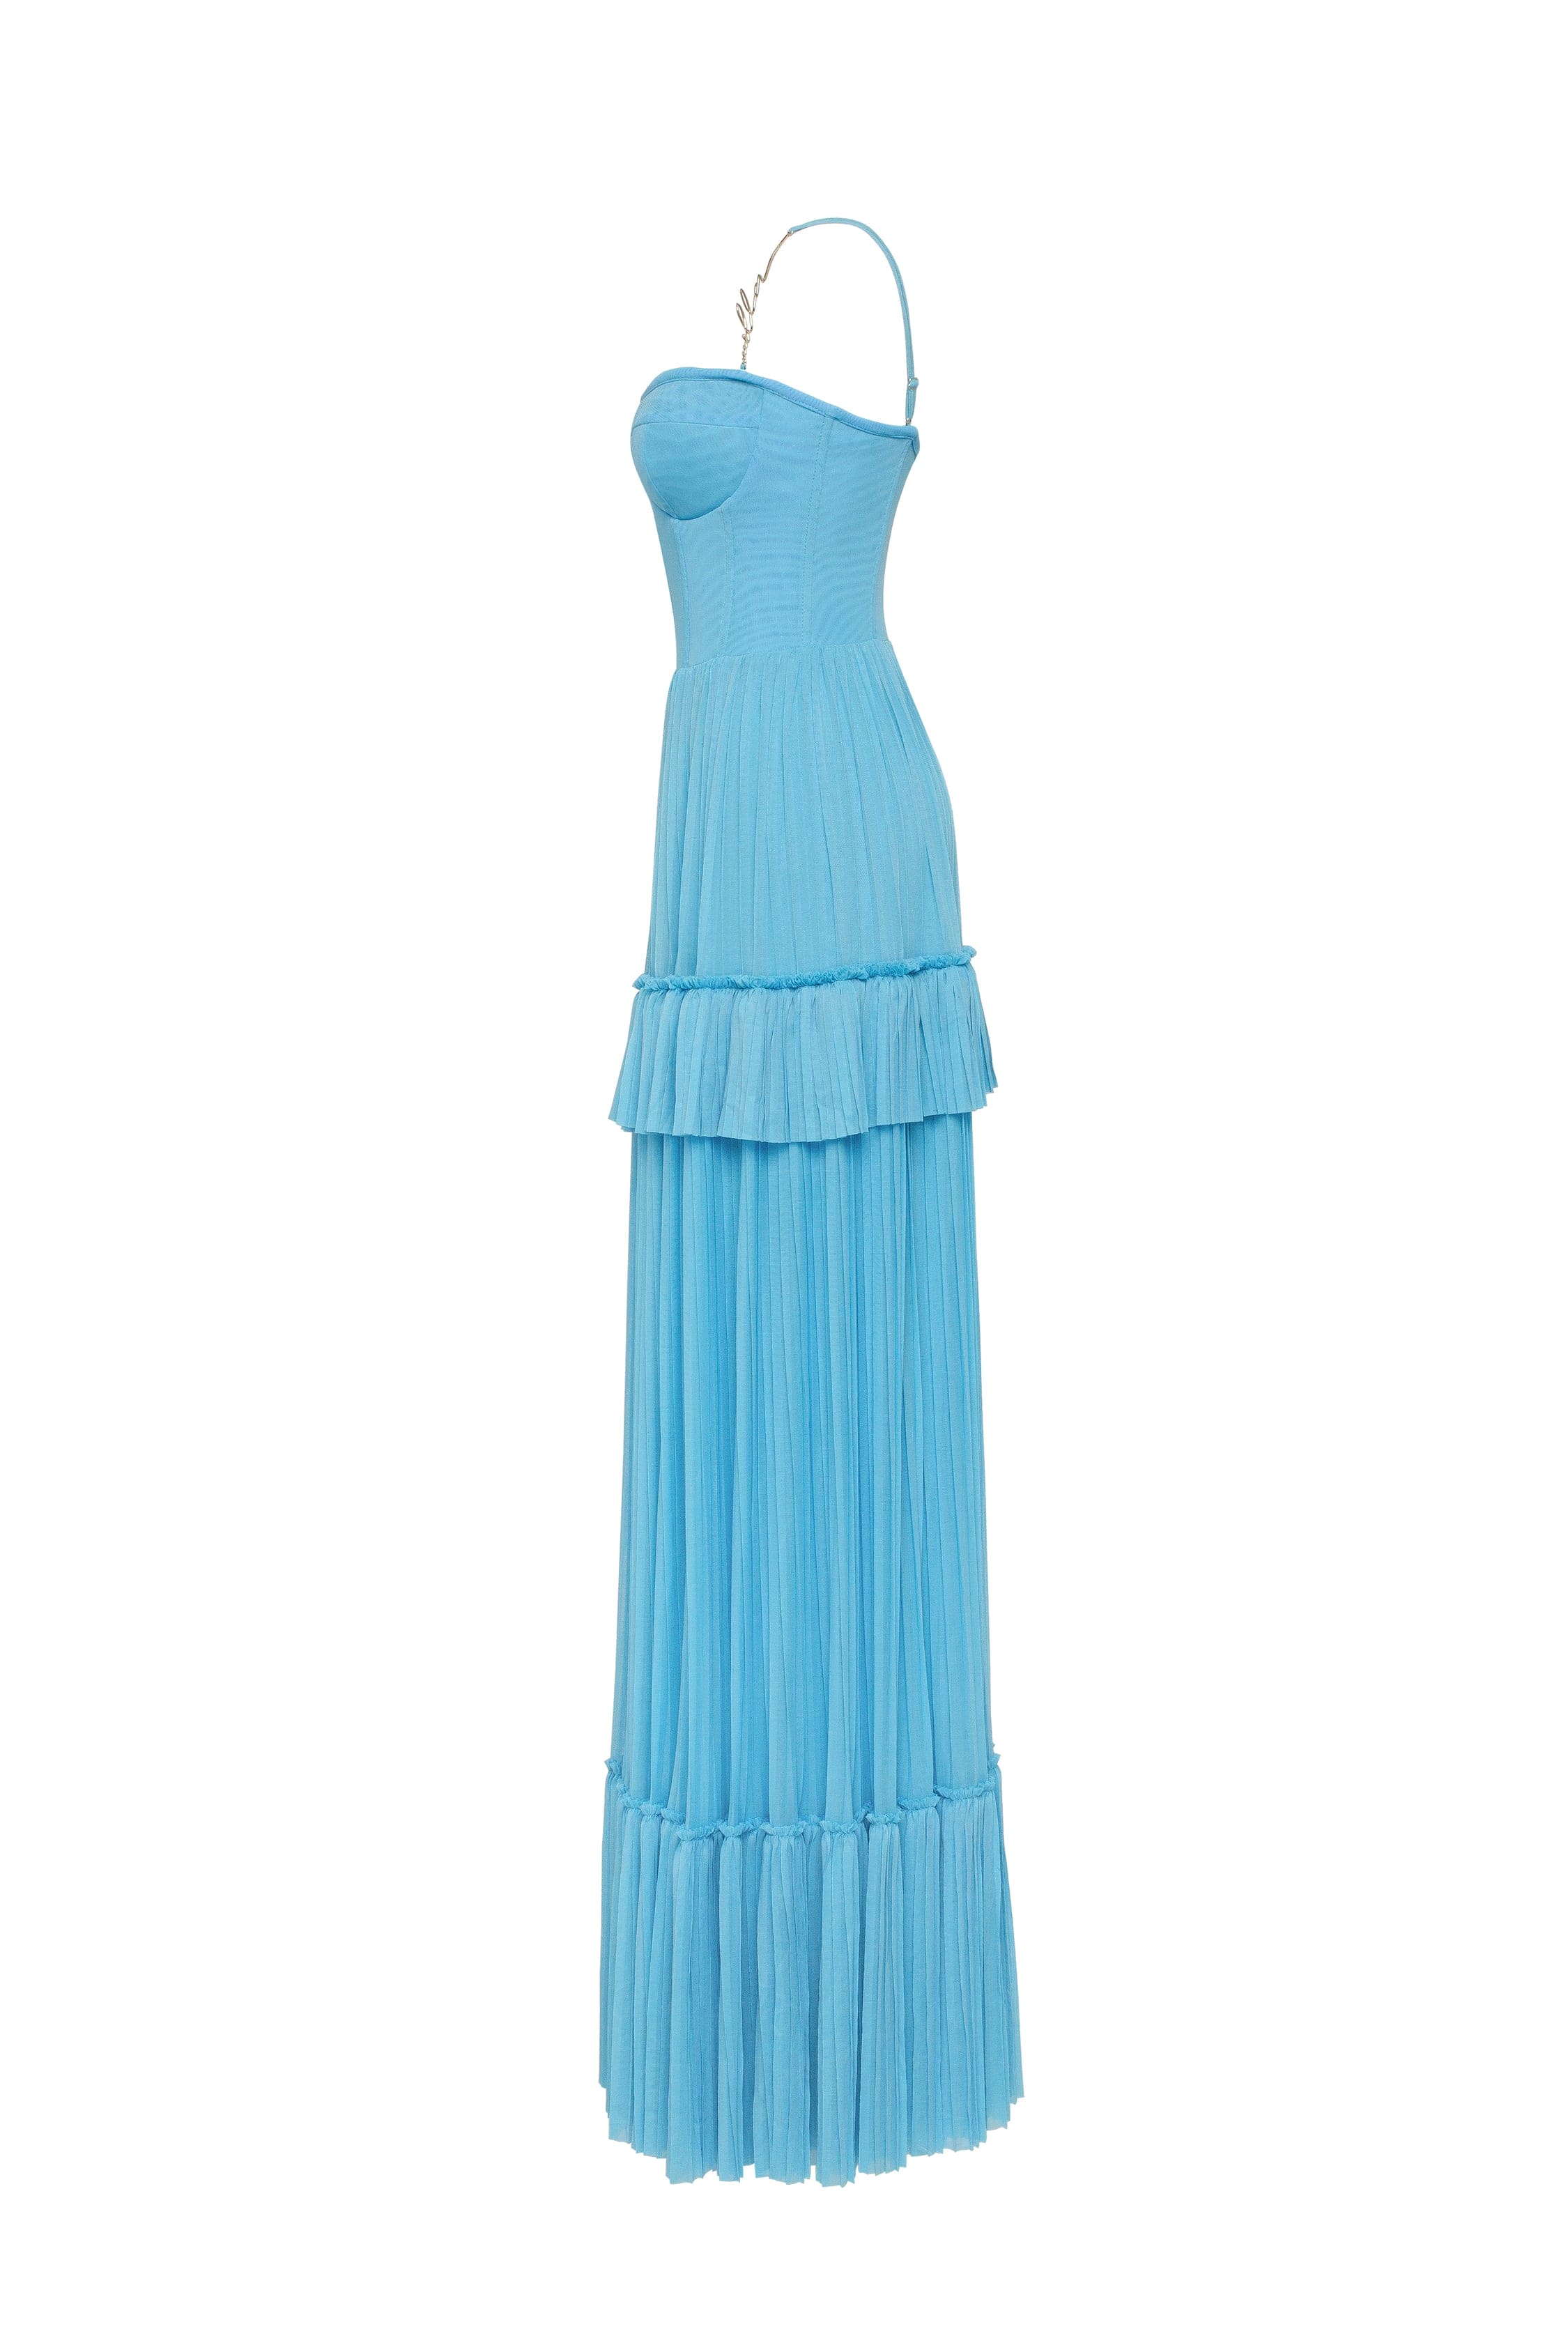 فستان ماكسي بأشرطة سباغيتي باللون الأزرق السماوي